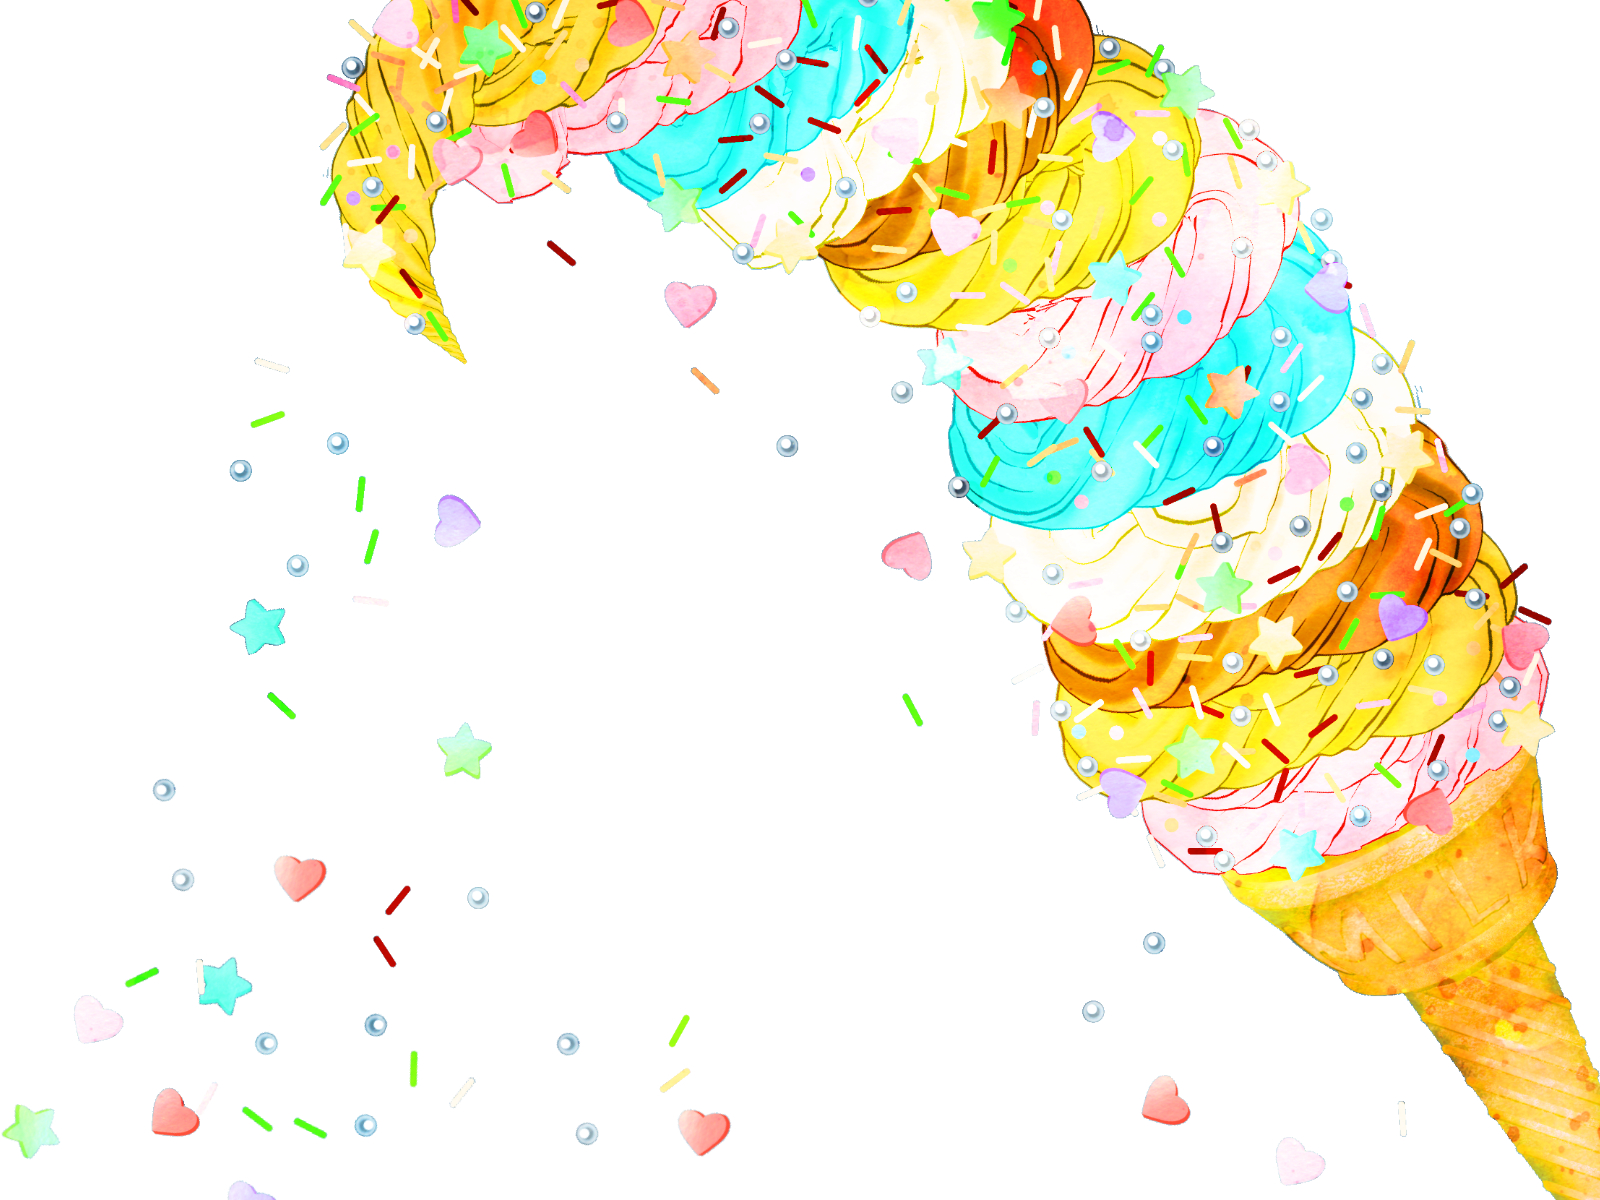 美味しくて可愛いフォトジェニックソフトクリーム 京都で人気のお店 Goody が6月24日の1日限定でピエリ守山に登場 滋賀のママがイベント 育児 遊び 学びを発信 シガマンマ ピースマム